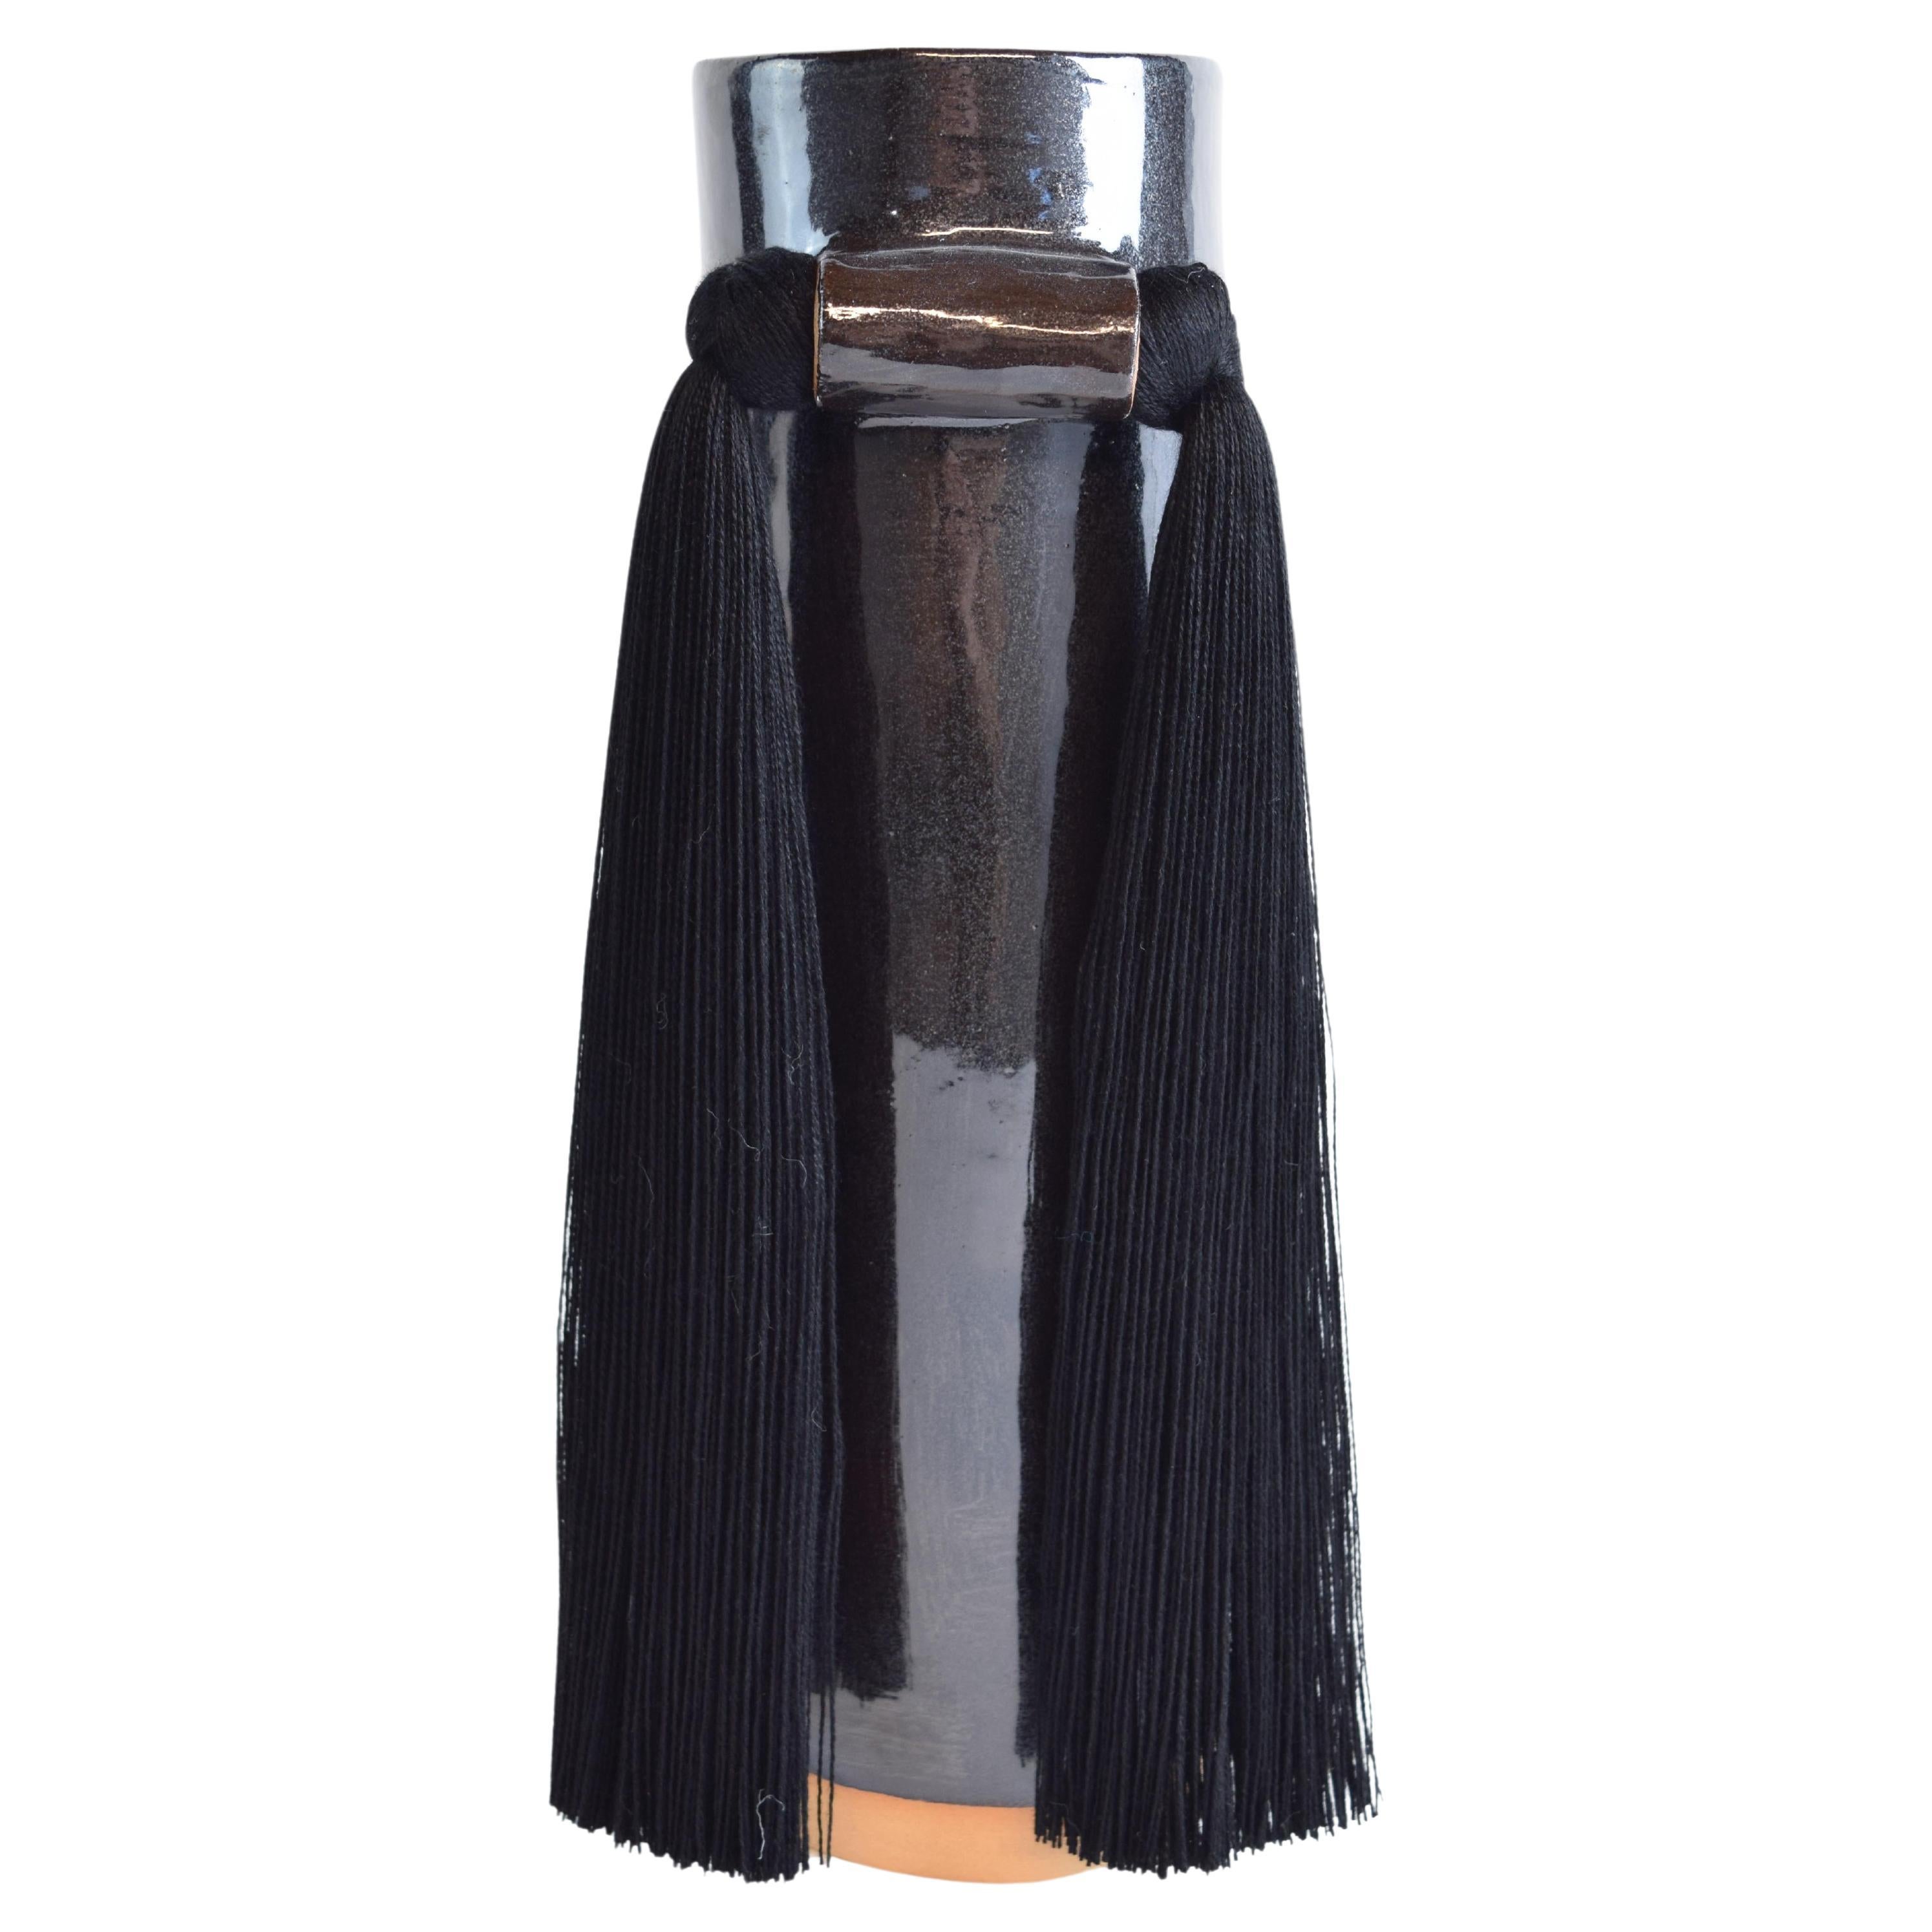 Vase en céramique fait main #531 en émail noir avec frange en tencel noir